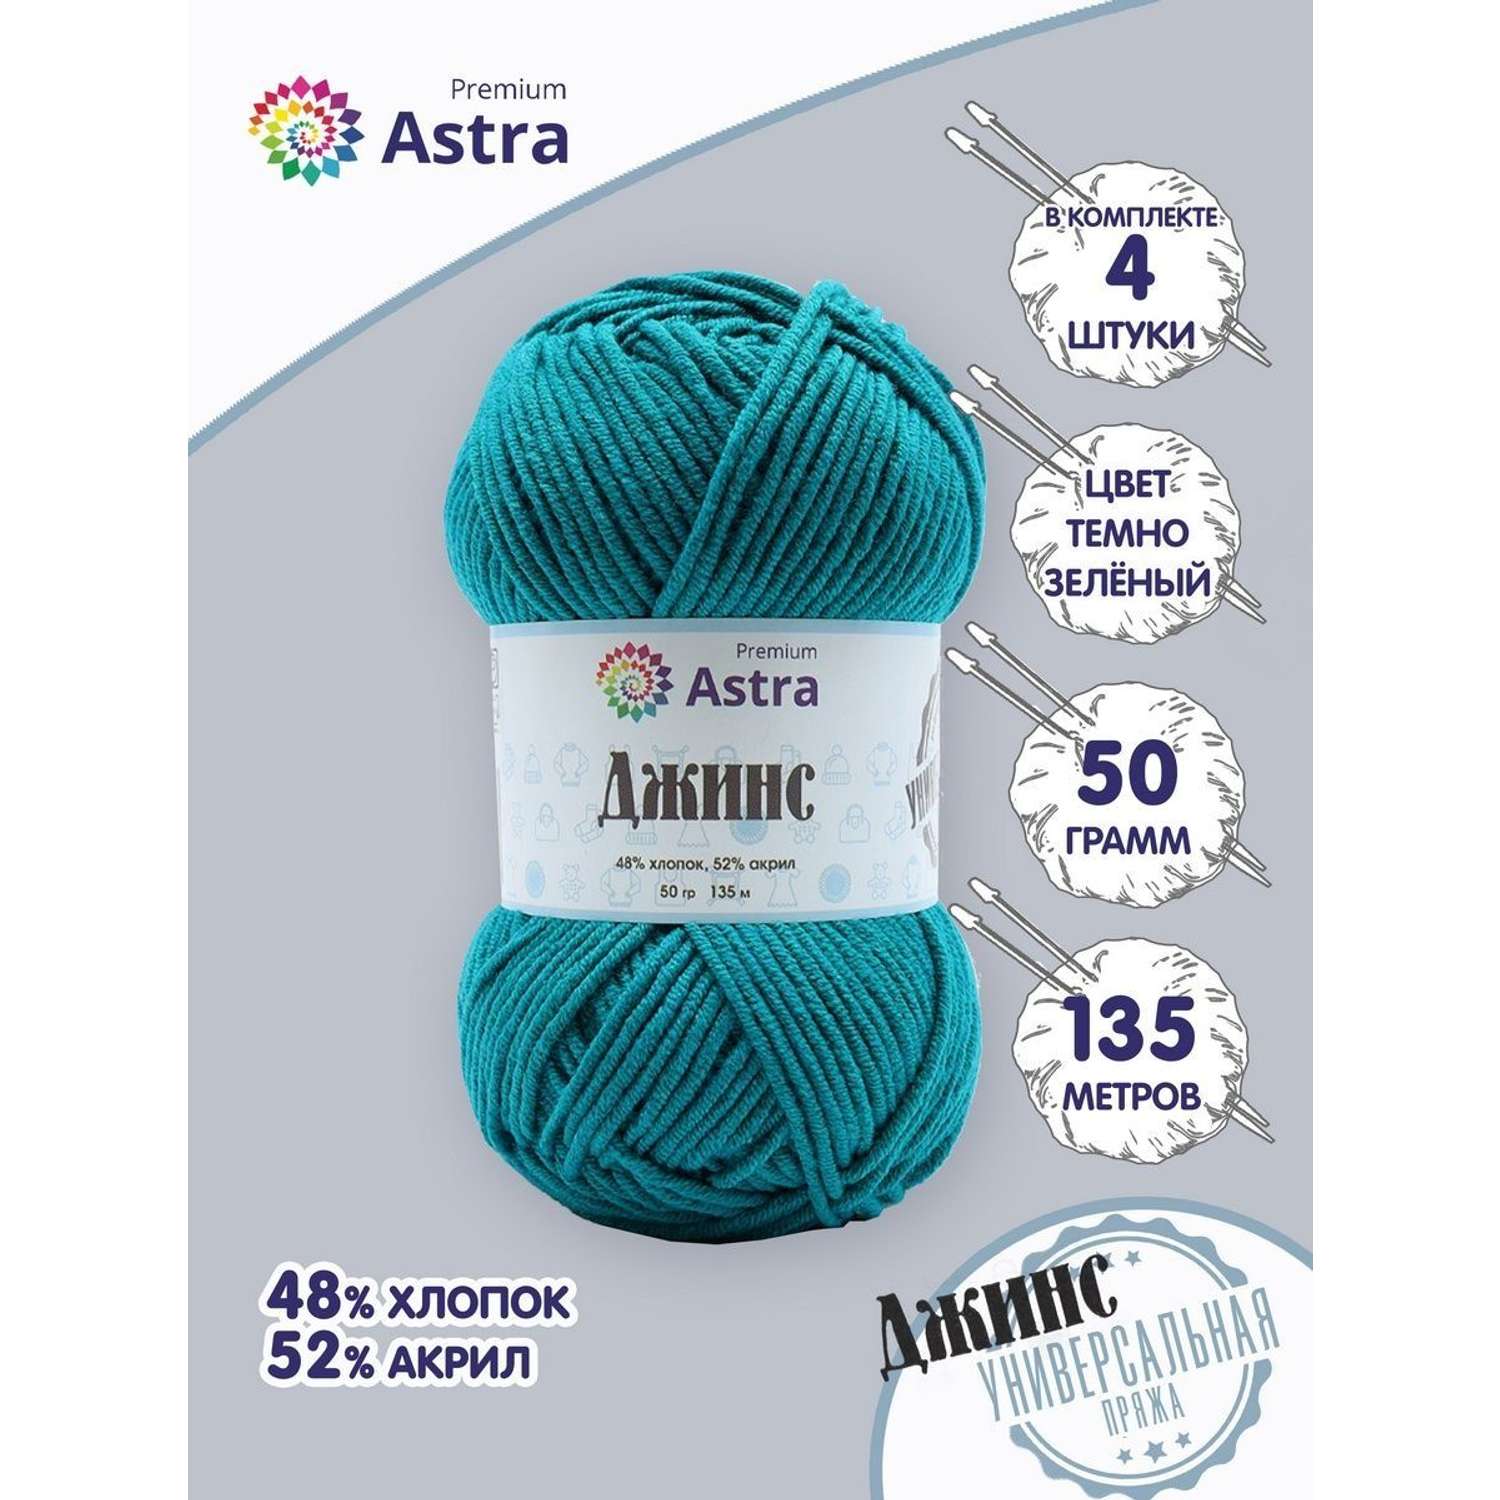 Пряжа для вязания Astra Premium джинс для повседневной одежды акрил хлопок 50 гр 135 м 490 темно-зеленый 4 мотка - фото 1